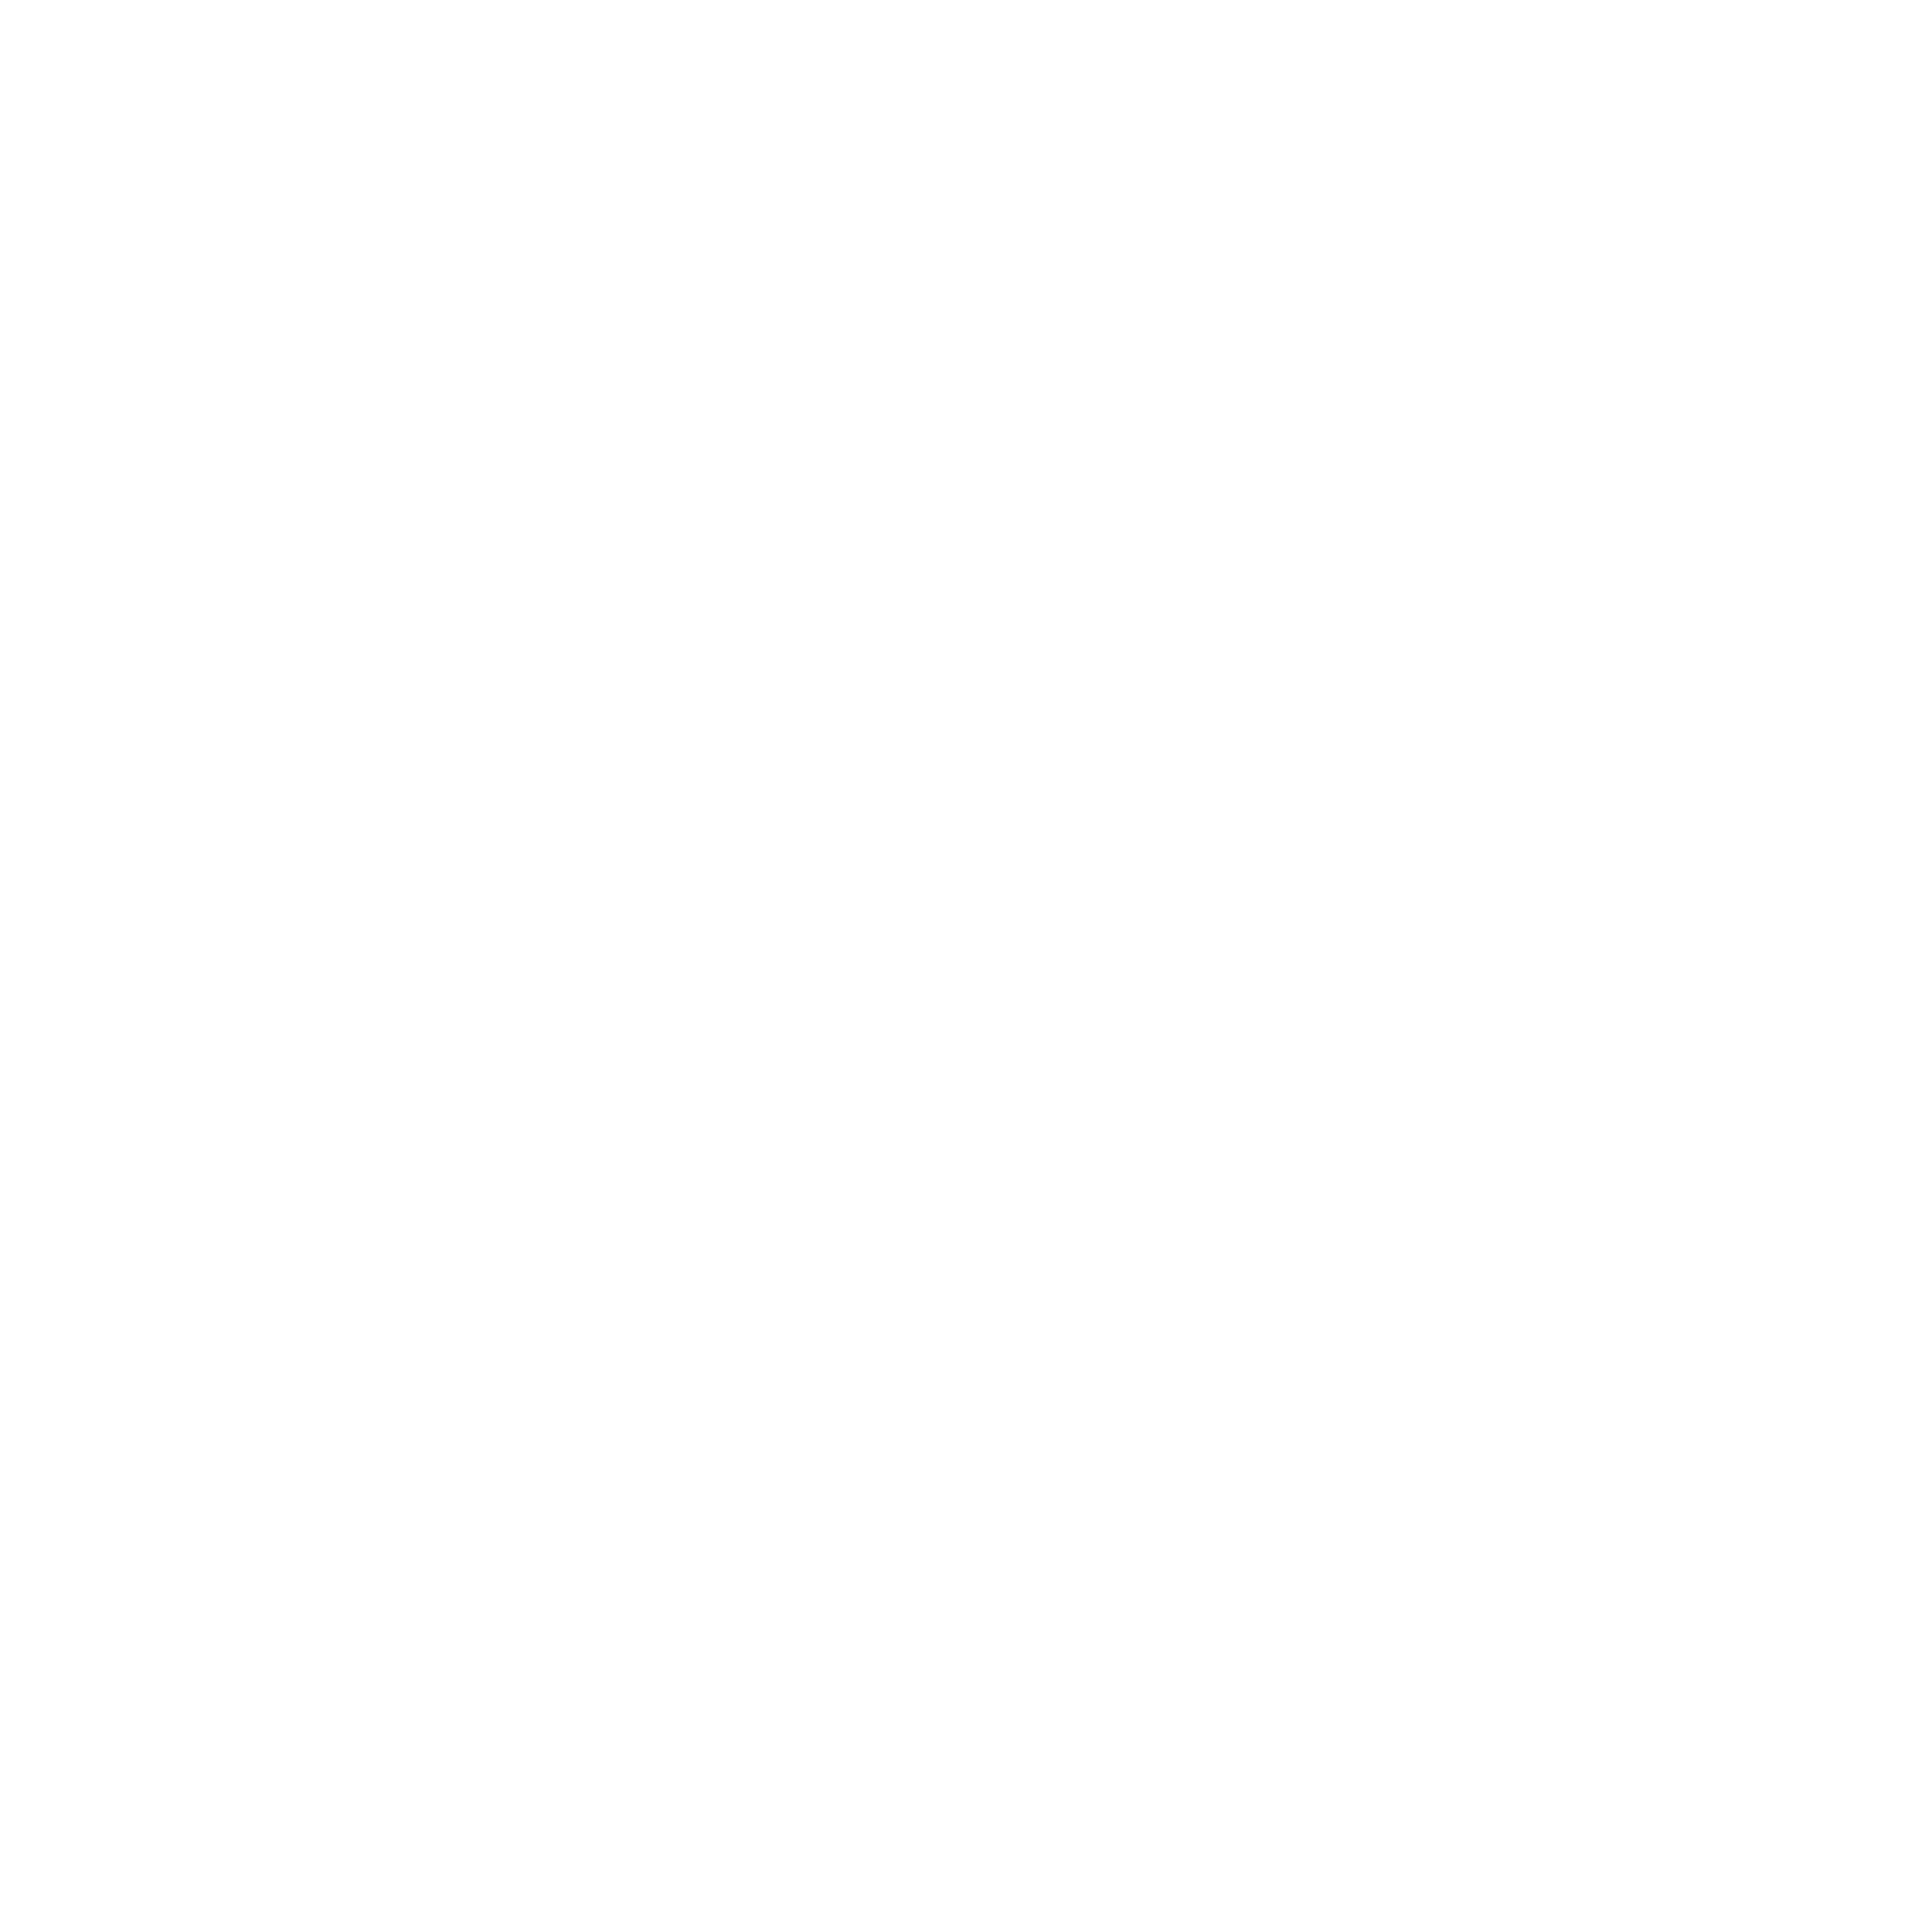 Tempo - Réseau des musiques actuelles de la métropole grenobloise